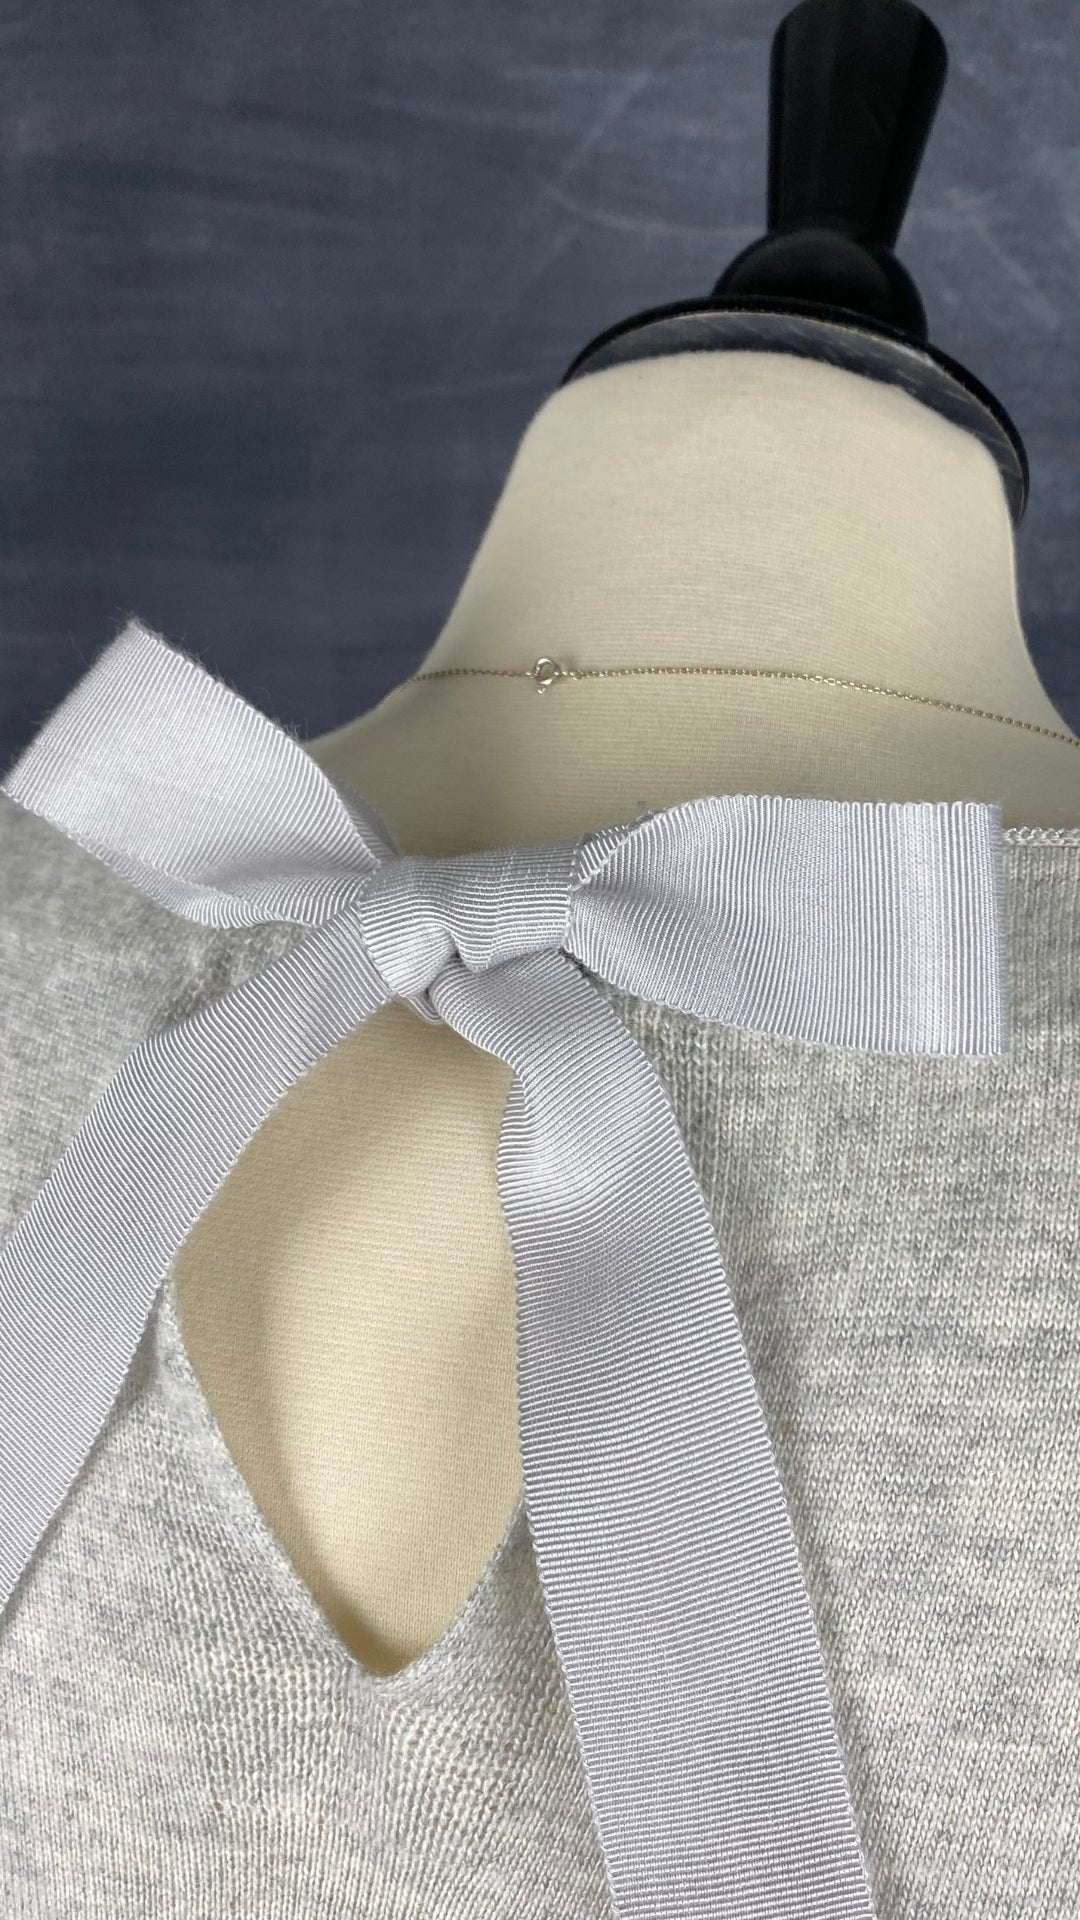 Chandail long en tricot doux gris beige Oui, taille 10 (environ medium). Vue du haut du dos.